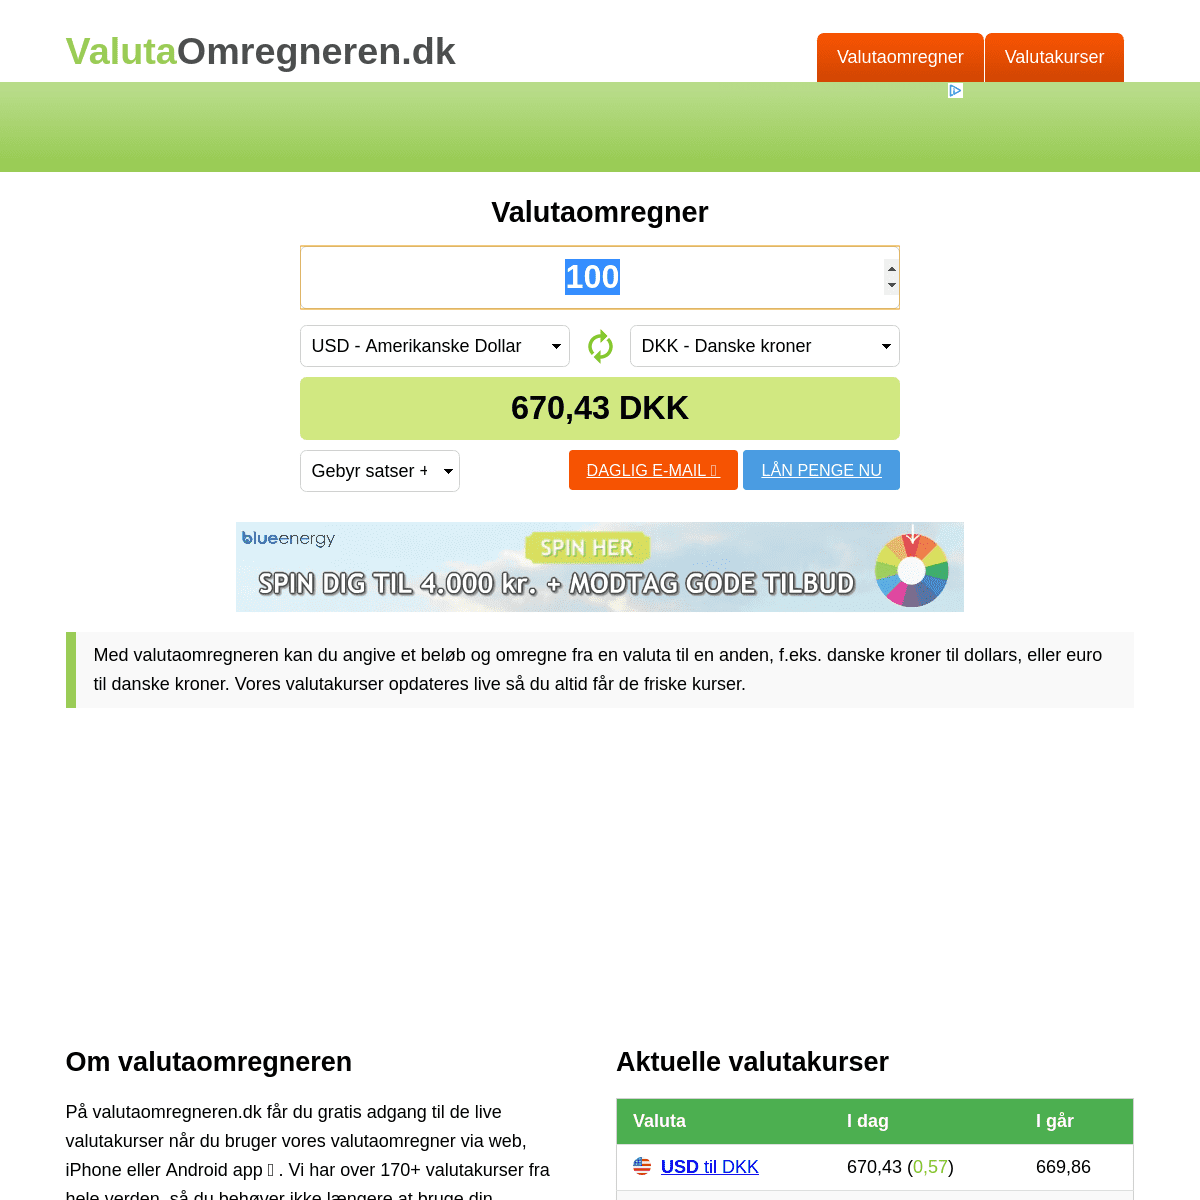 A complete backup of valutaomregneren.dk